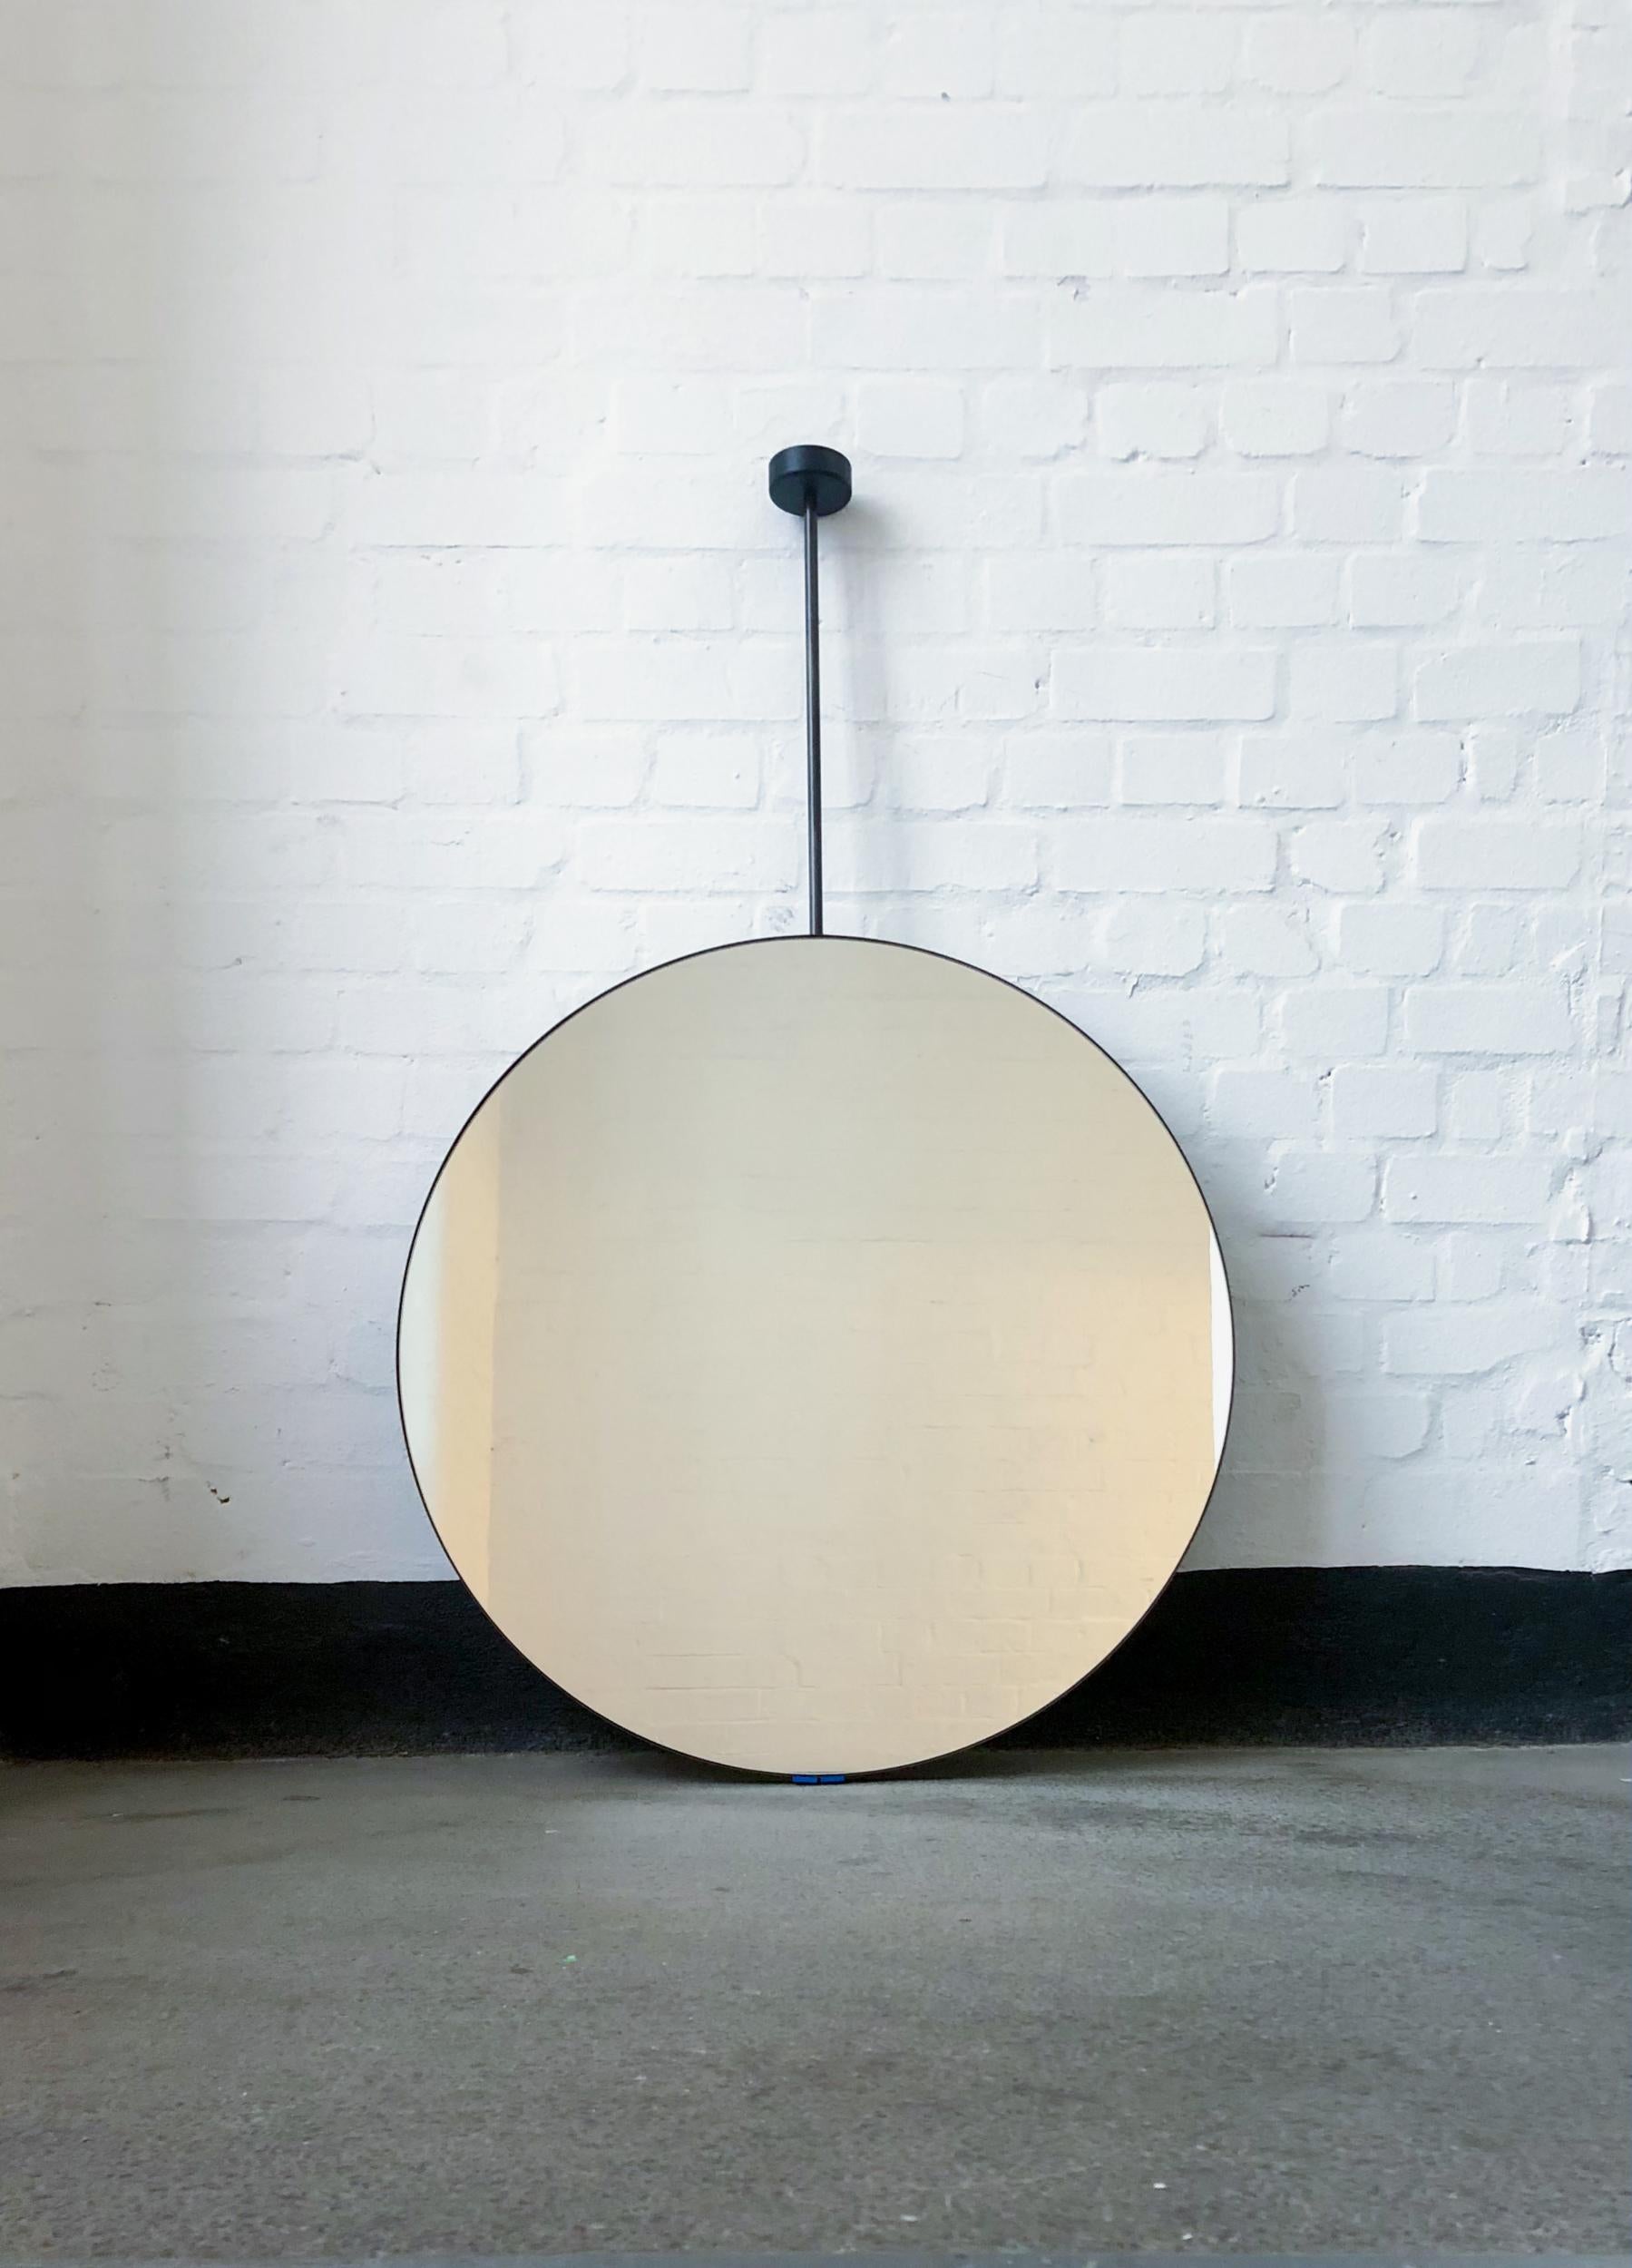 Charmant miroir rond suspendu au plafond avec un cadre en acier inoxydable noirci.

650 mm (25,6